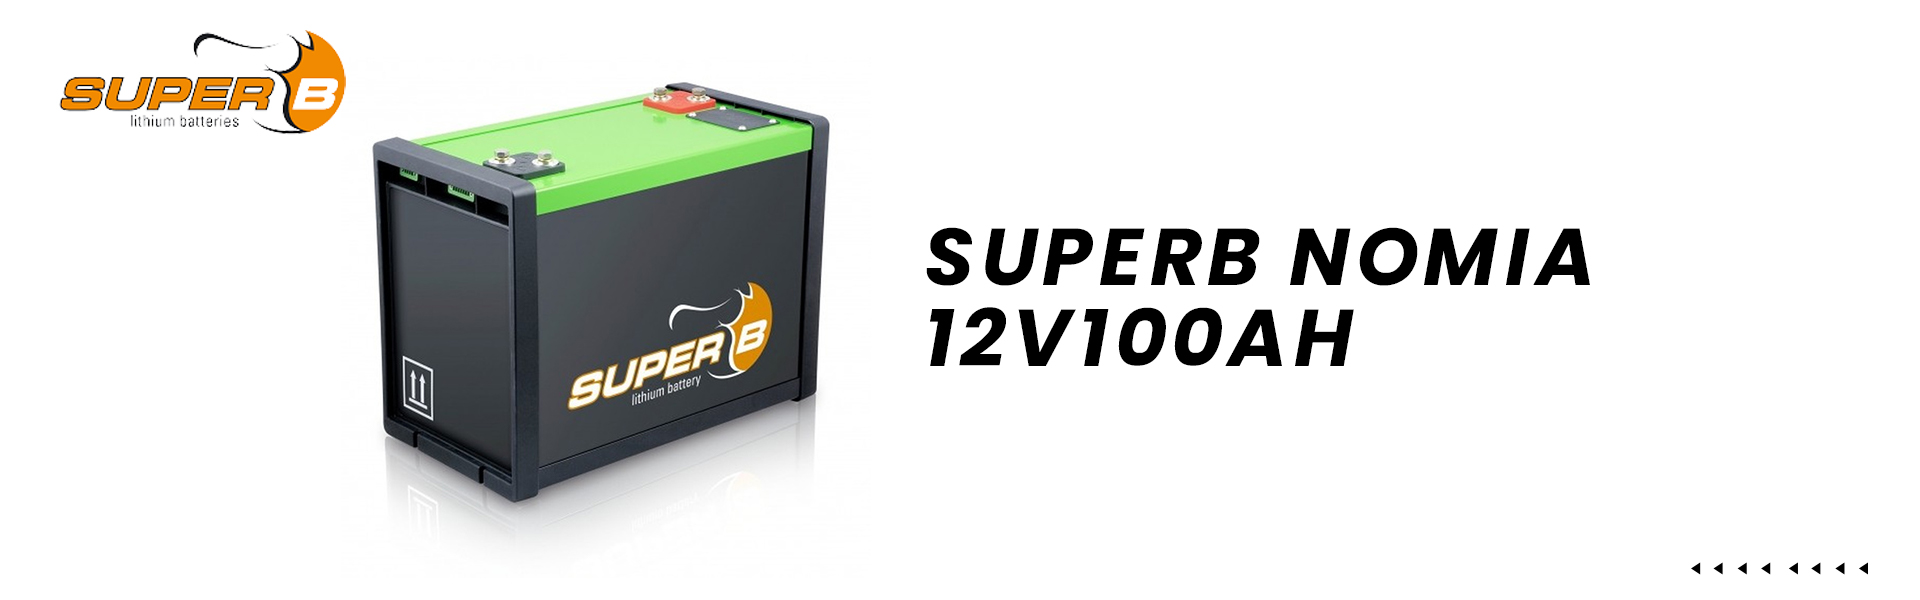 SuperB-Nomia-12V100AH